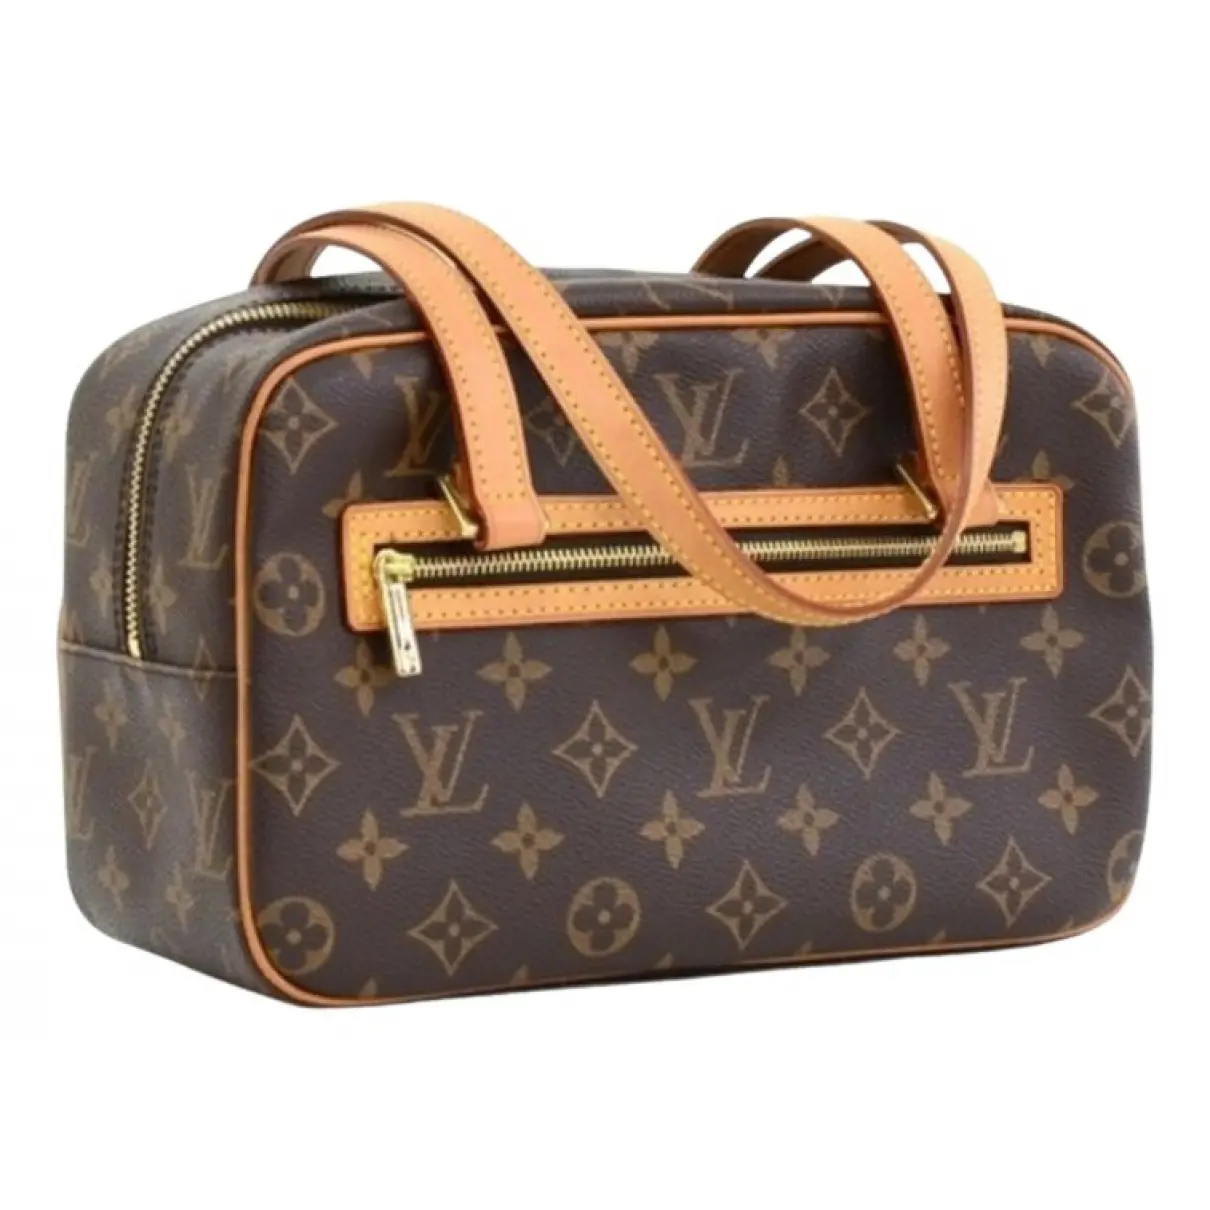 Aubagne patent leather handbag Louis Vuitton